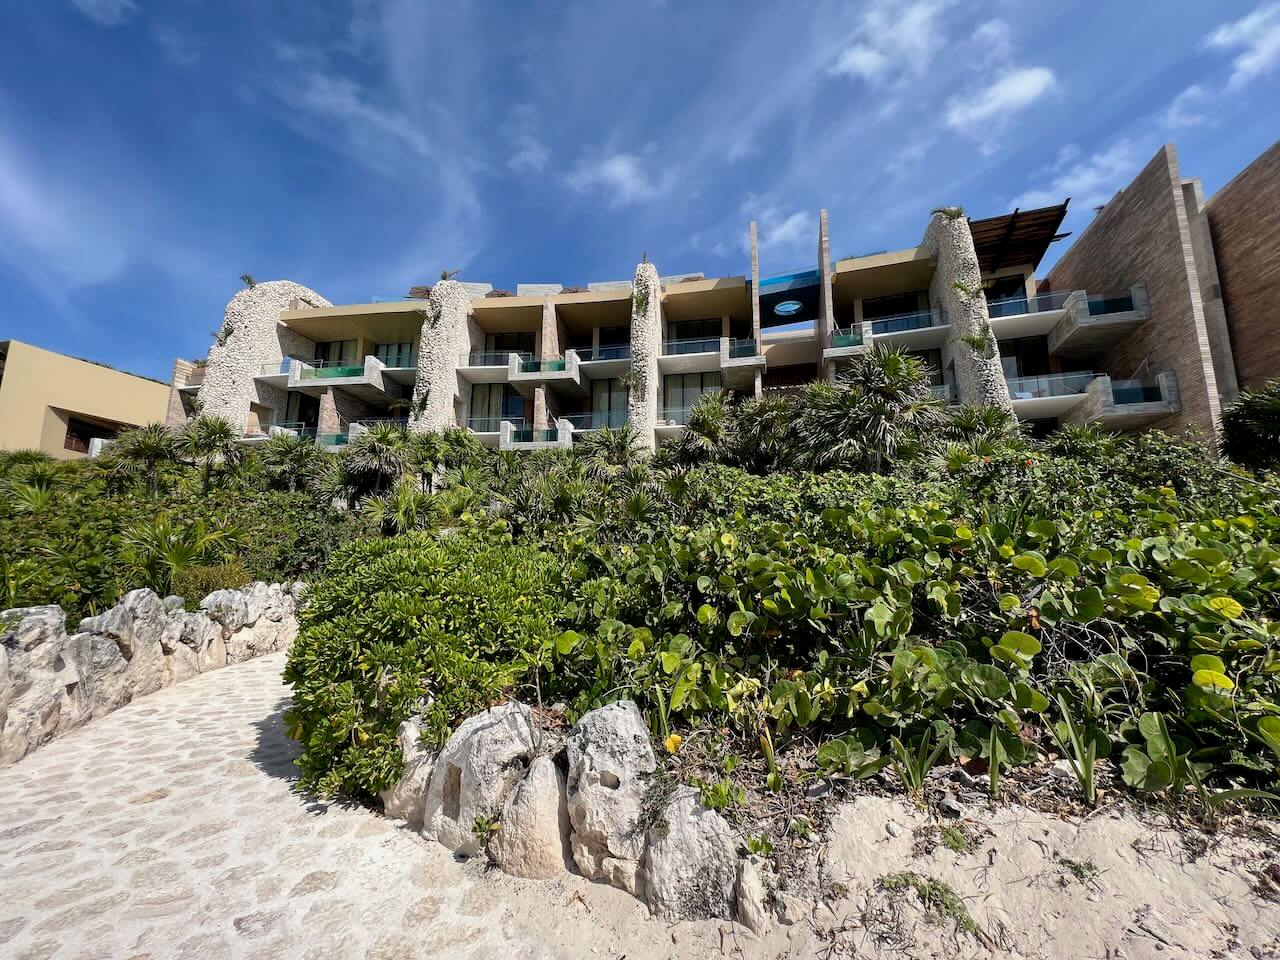 La Casa de la Playa luxury hotel in Mexico.